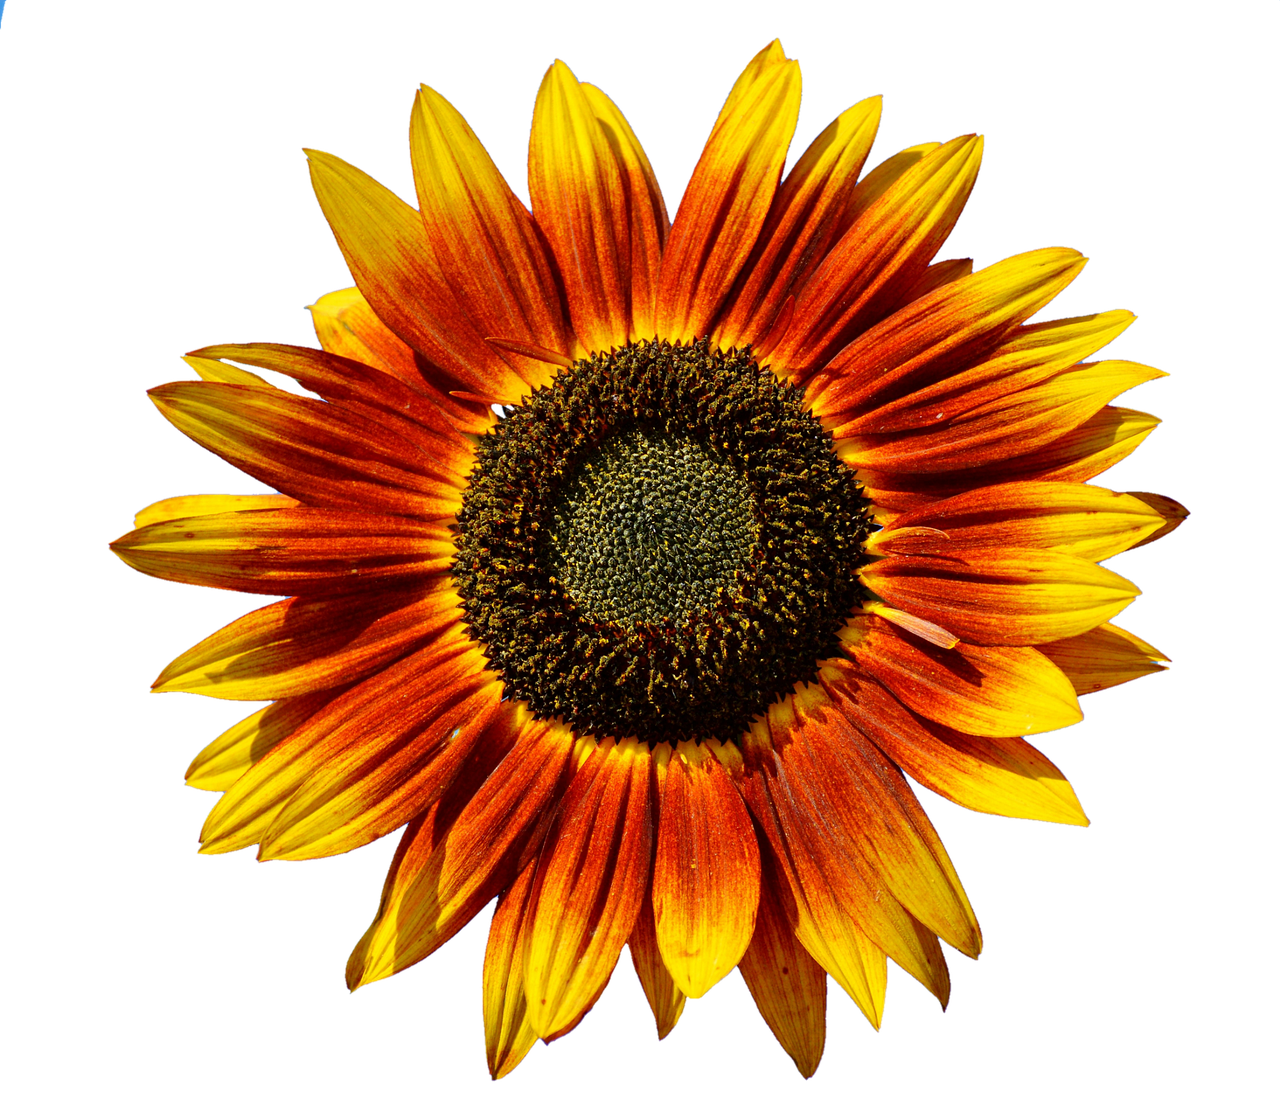 Vibrant Sunflower Against Black Background.jpg PNG image